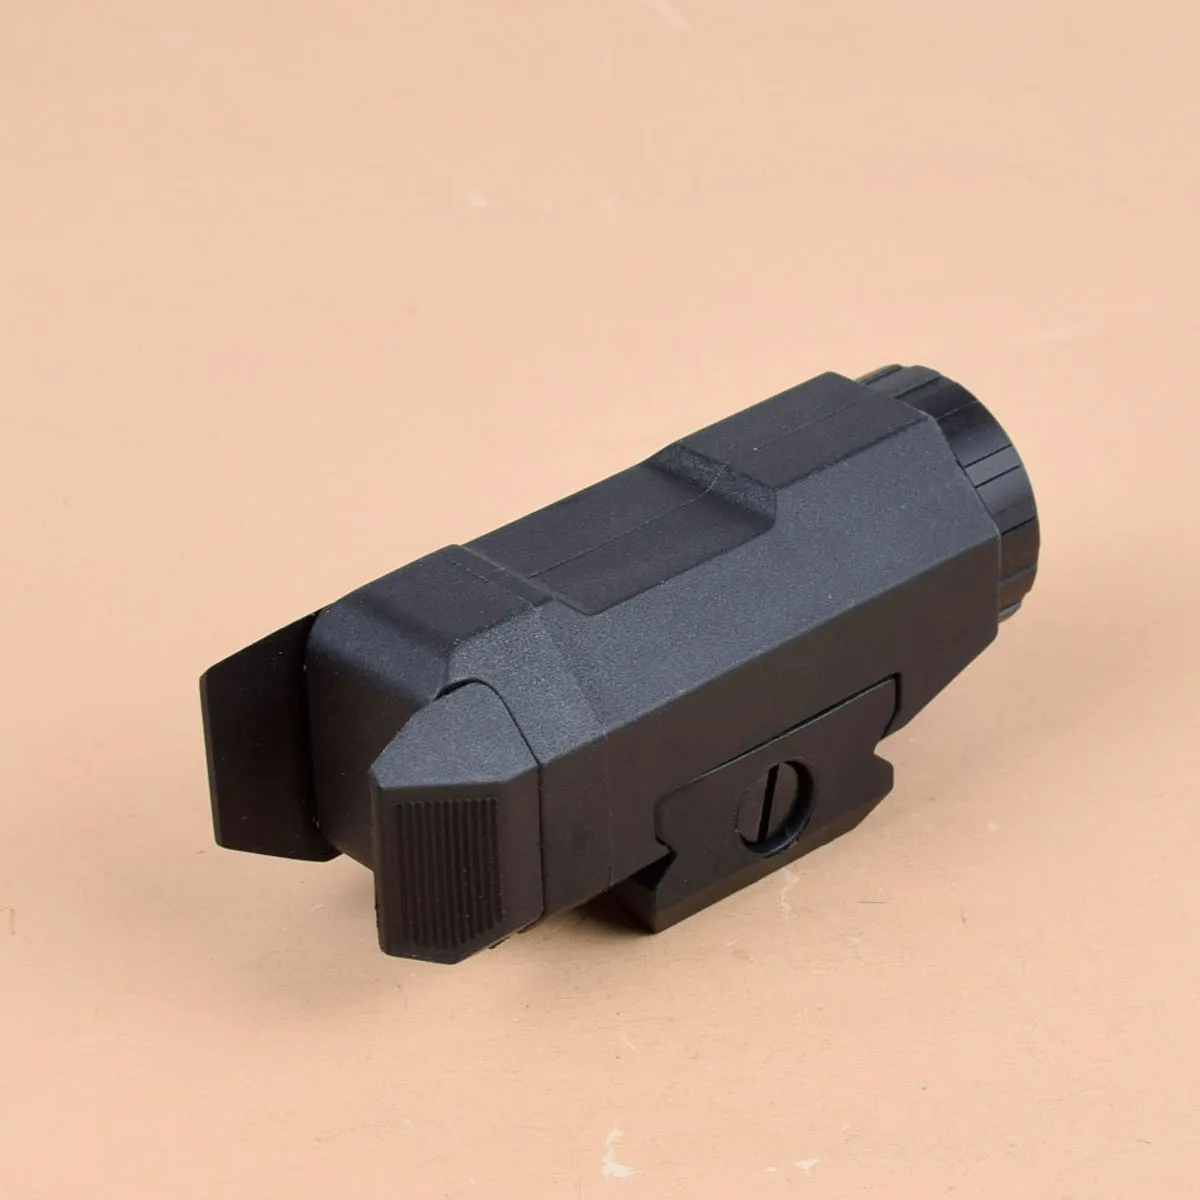 20mm 피카티니 레일용 택티컬 스카우트 라이트 컴팩트 APL 스트로브 손전등